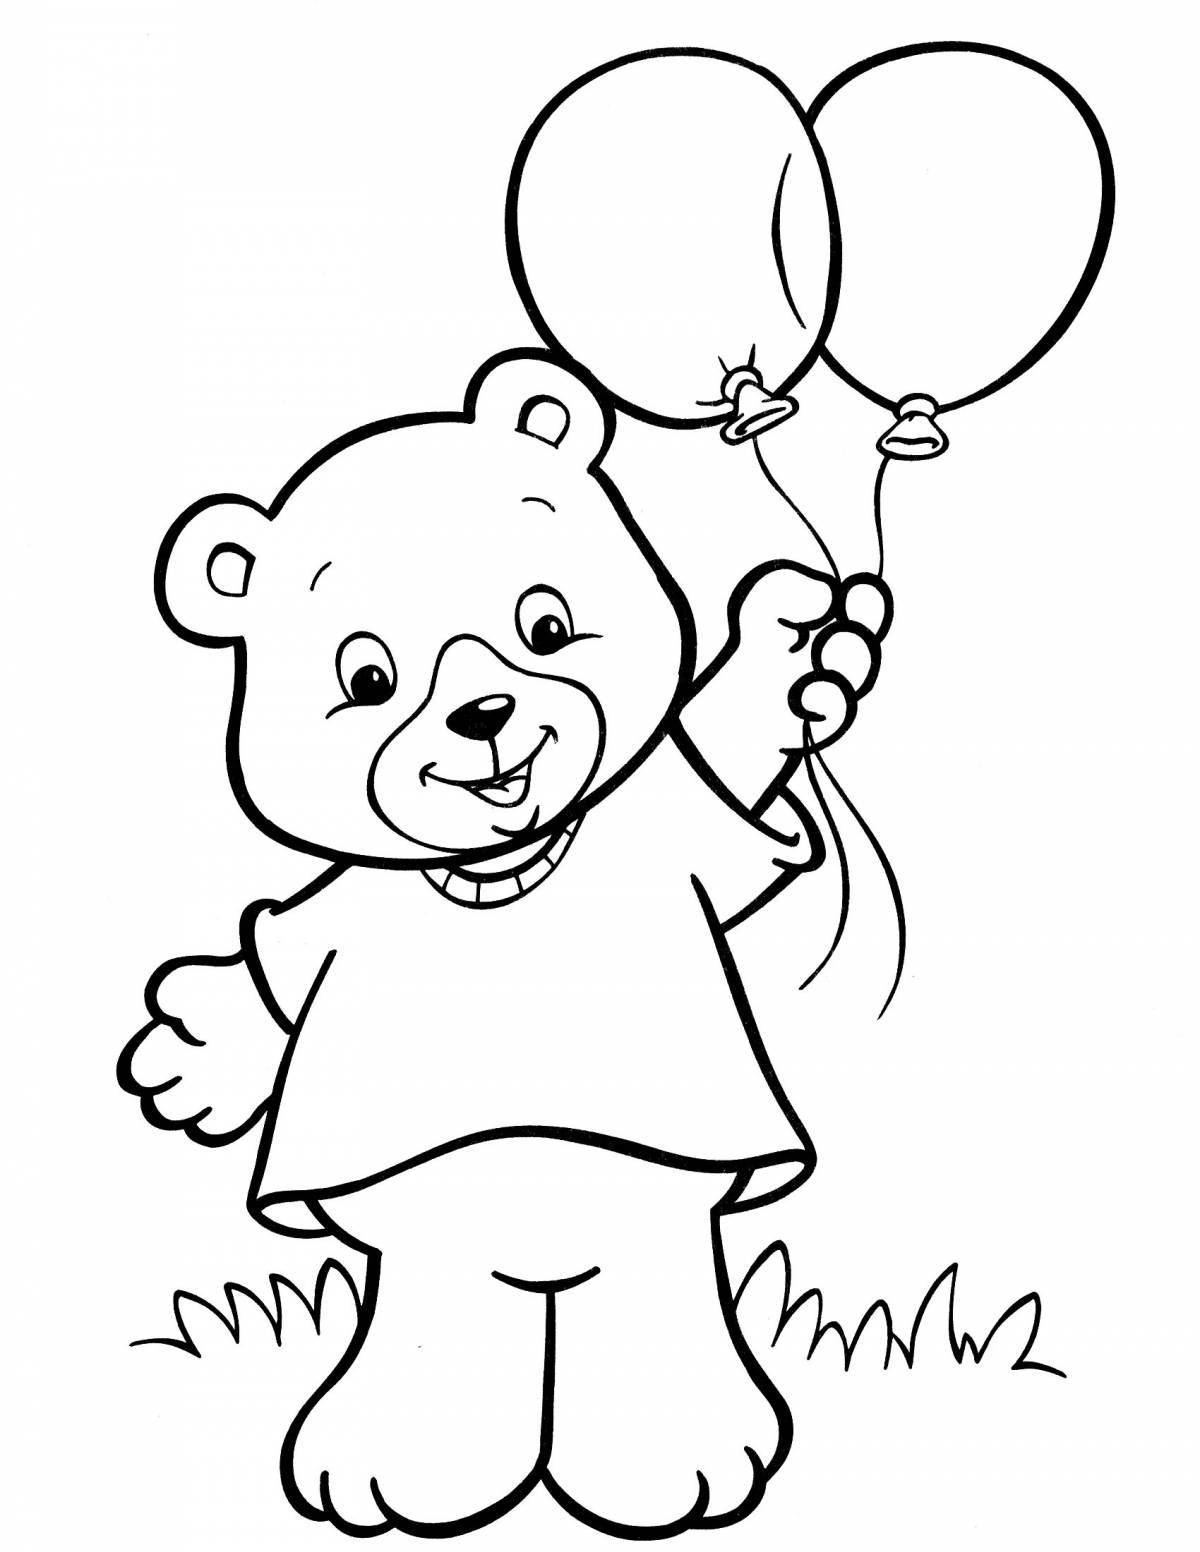 Удивительная раскраска медведя для детей 2-3 лет